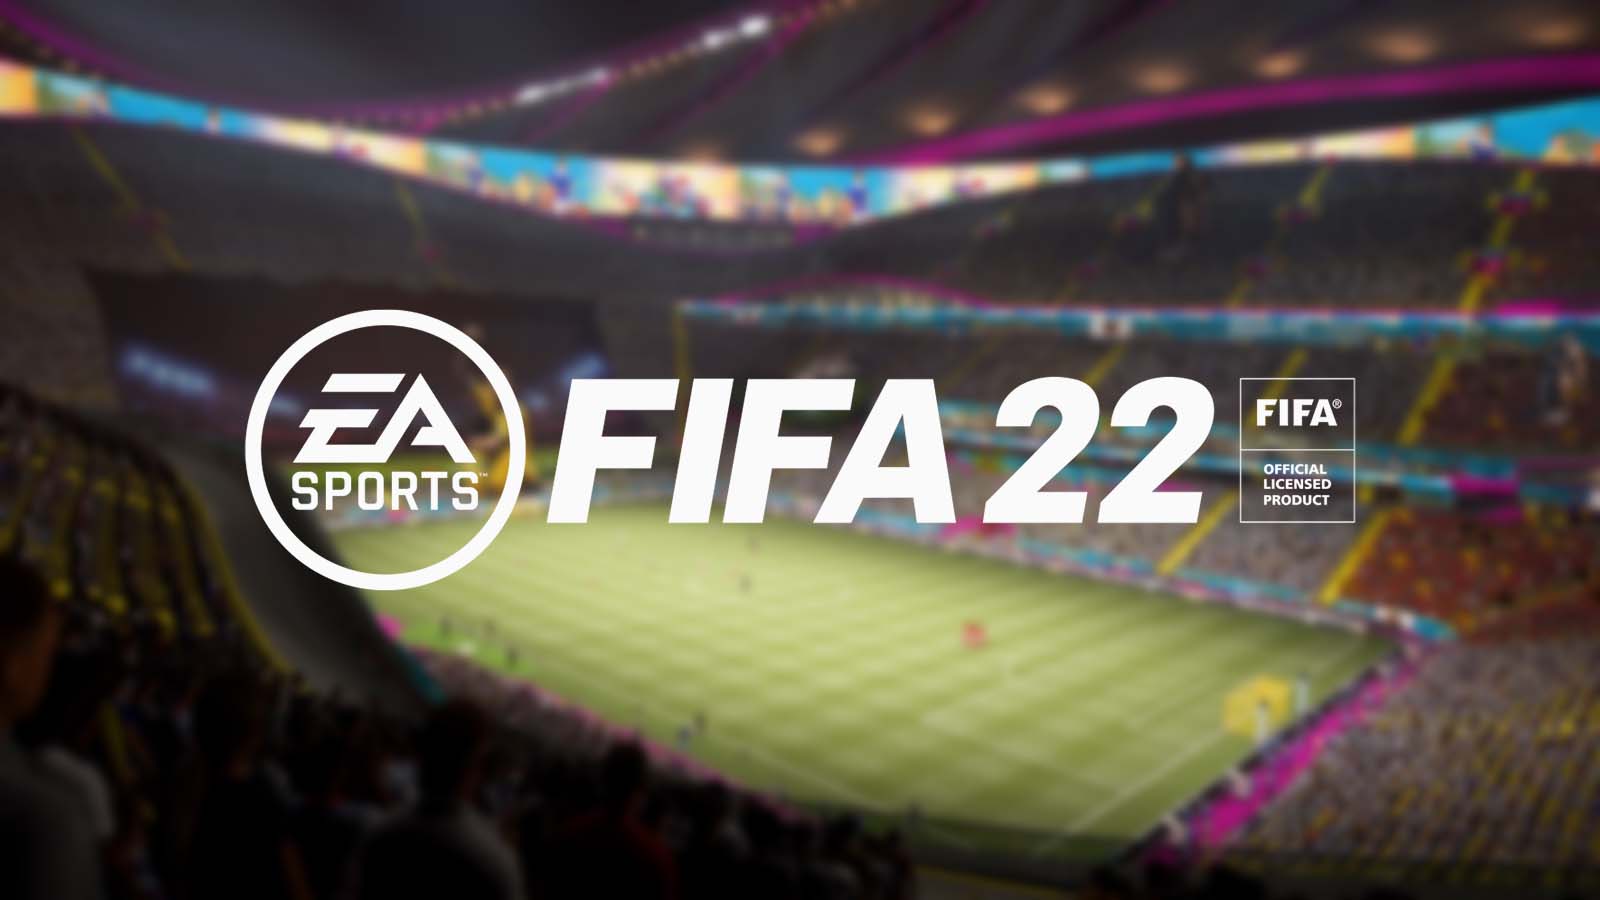 FIFA 22 logo over stadium